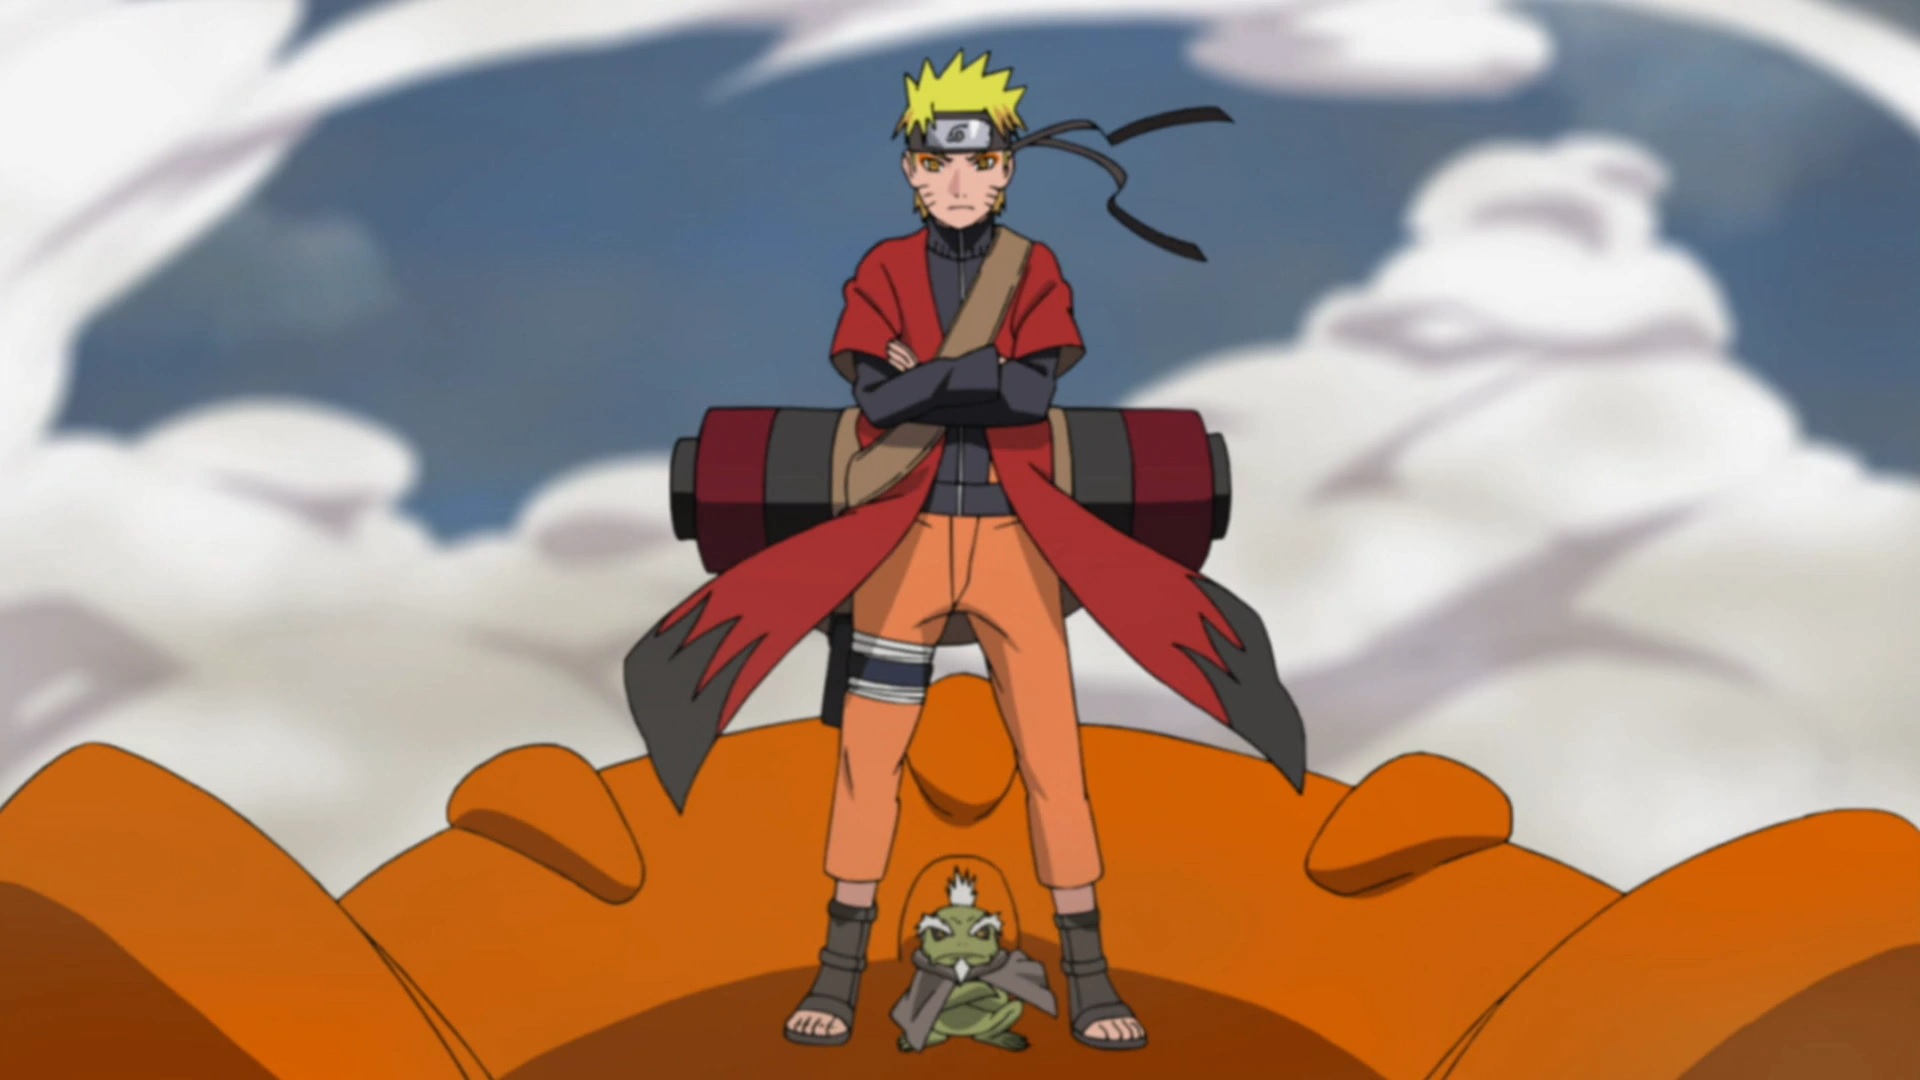 As 10 melhores lutas de Naruto